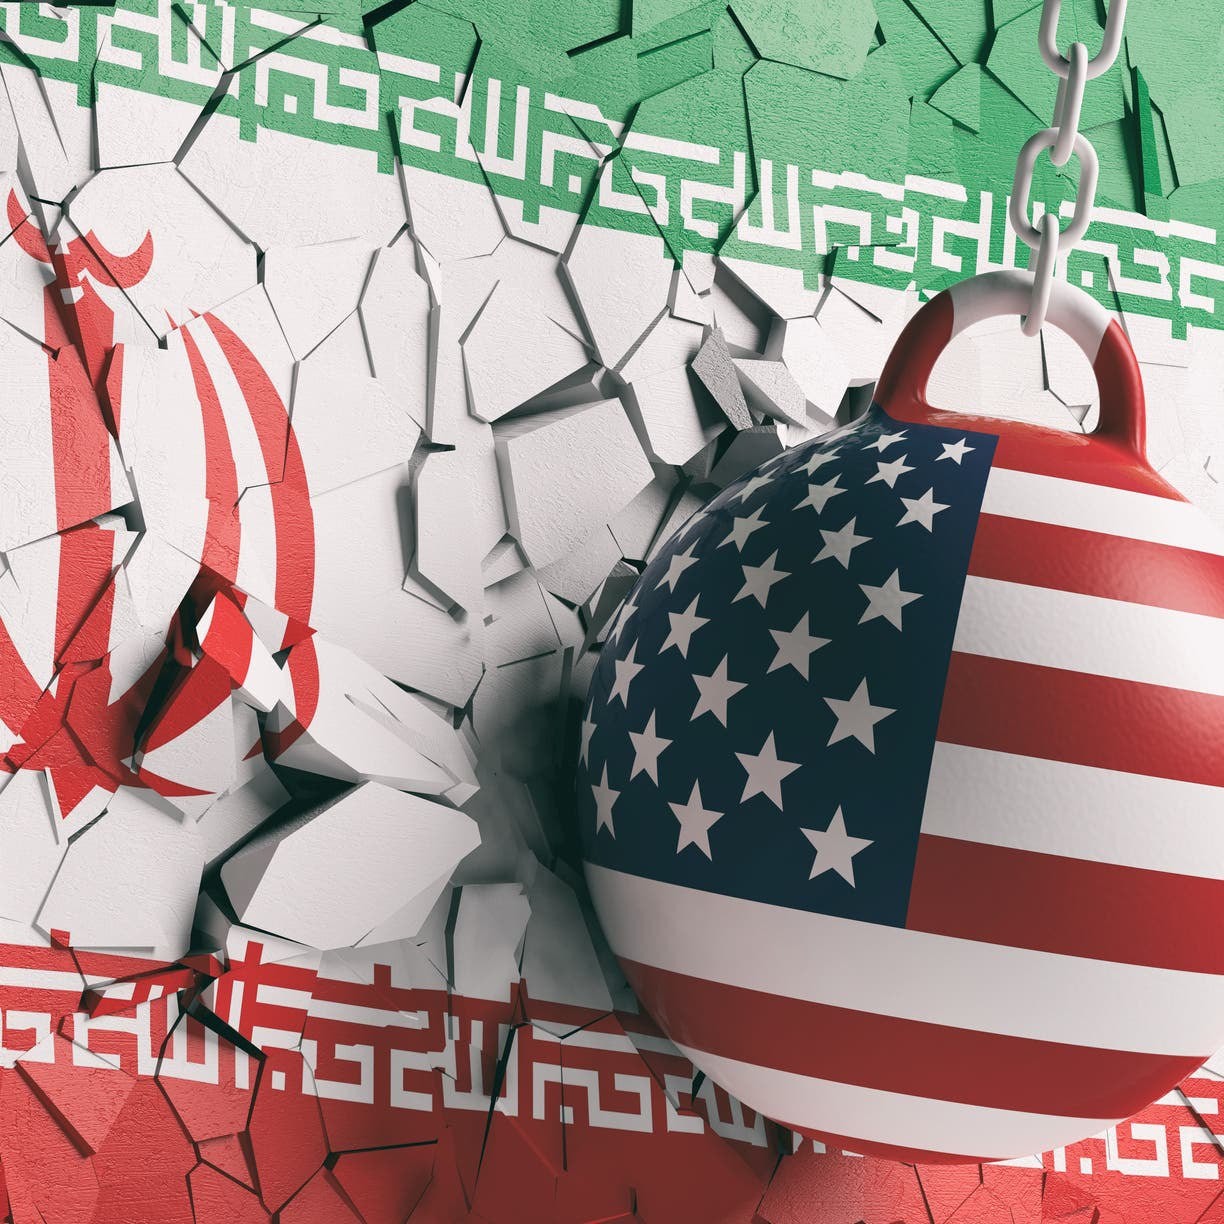 المتحدث باسم وزارة الدفاع الأمريكية، جون كيربي، قال إن مزاعم طهران بأن البحرية الأمريكية حاولت الاستيلاء على سفينة محملة بالنفط الإيراني "كاذبة وغير صحيحة"